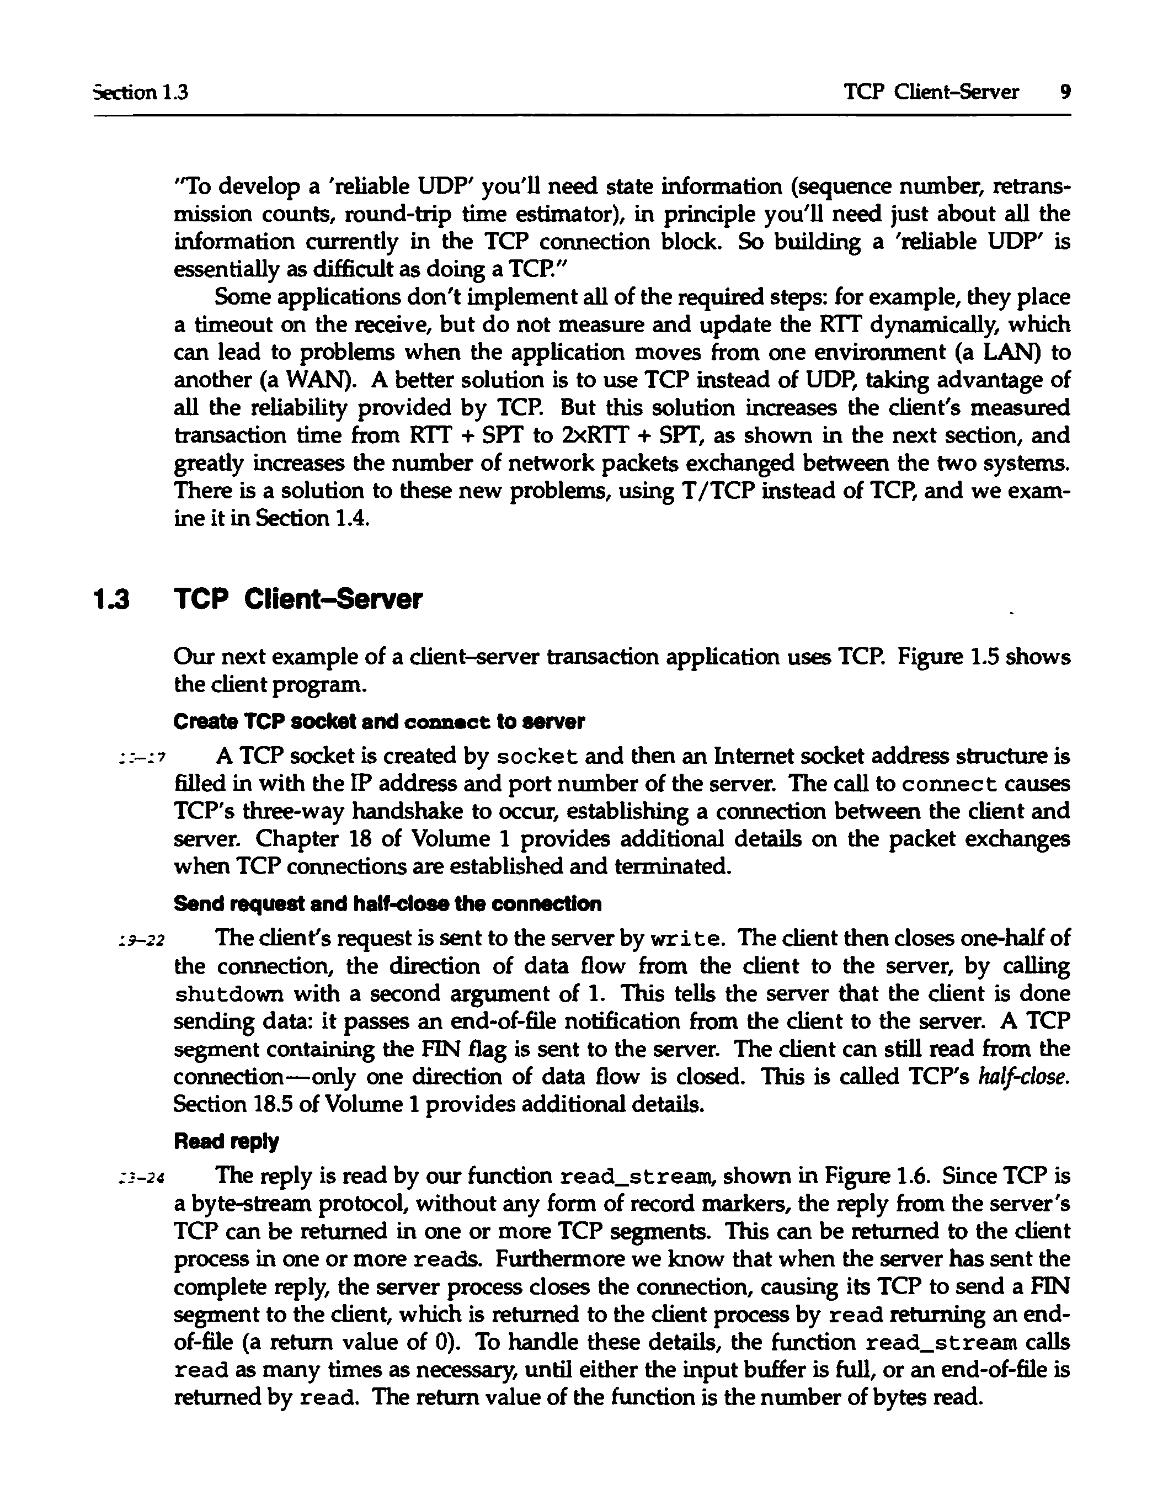 1.3 TCP Client-Server